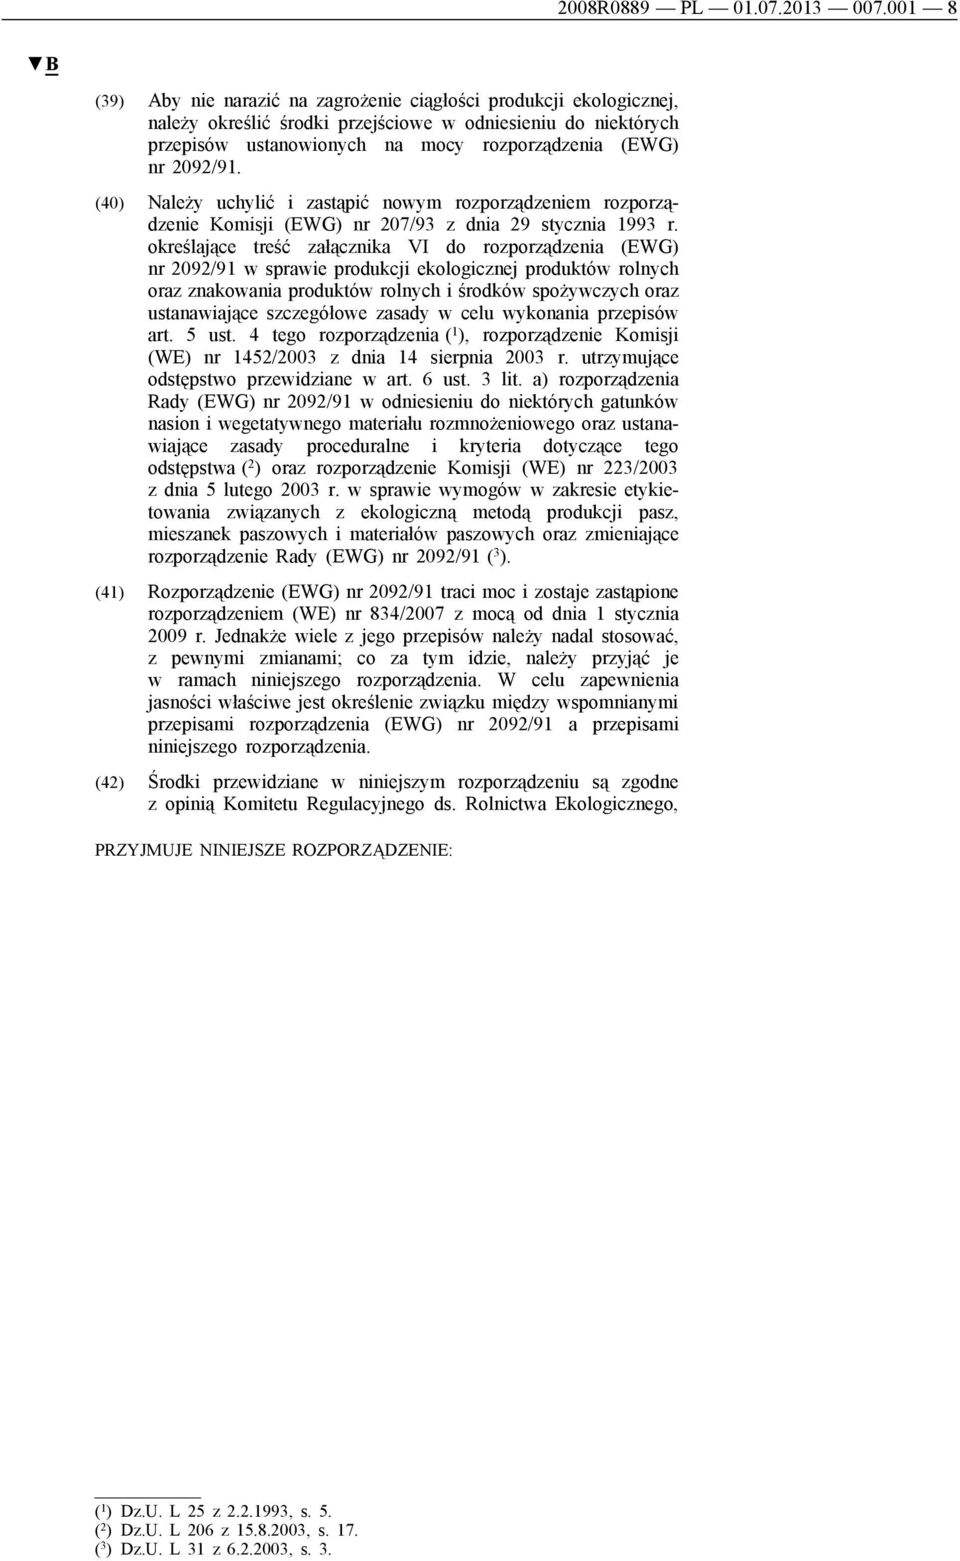 2092/91. (40) Należy uchylić i zastąpić nowym rozporządzeniem rozporządzenie Komisji (EWG) nr 207/93 z dnia 29 stycznia 1993 r.